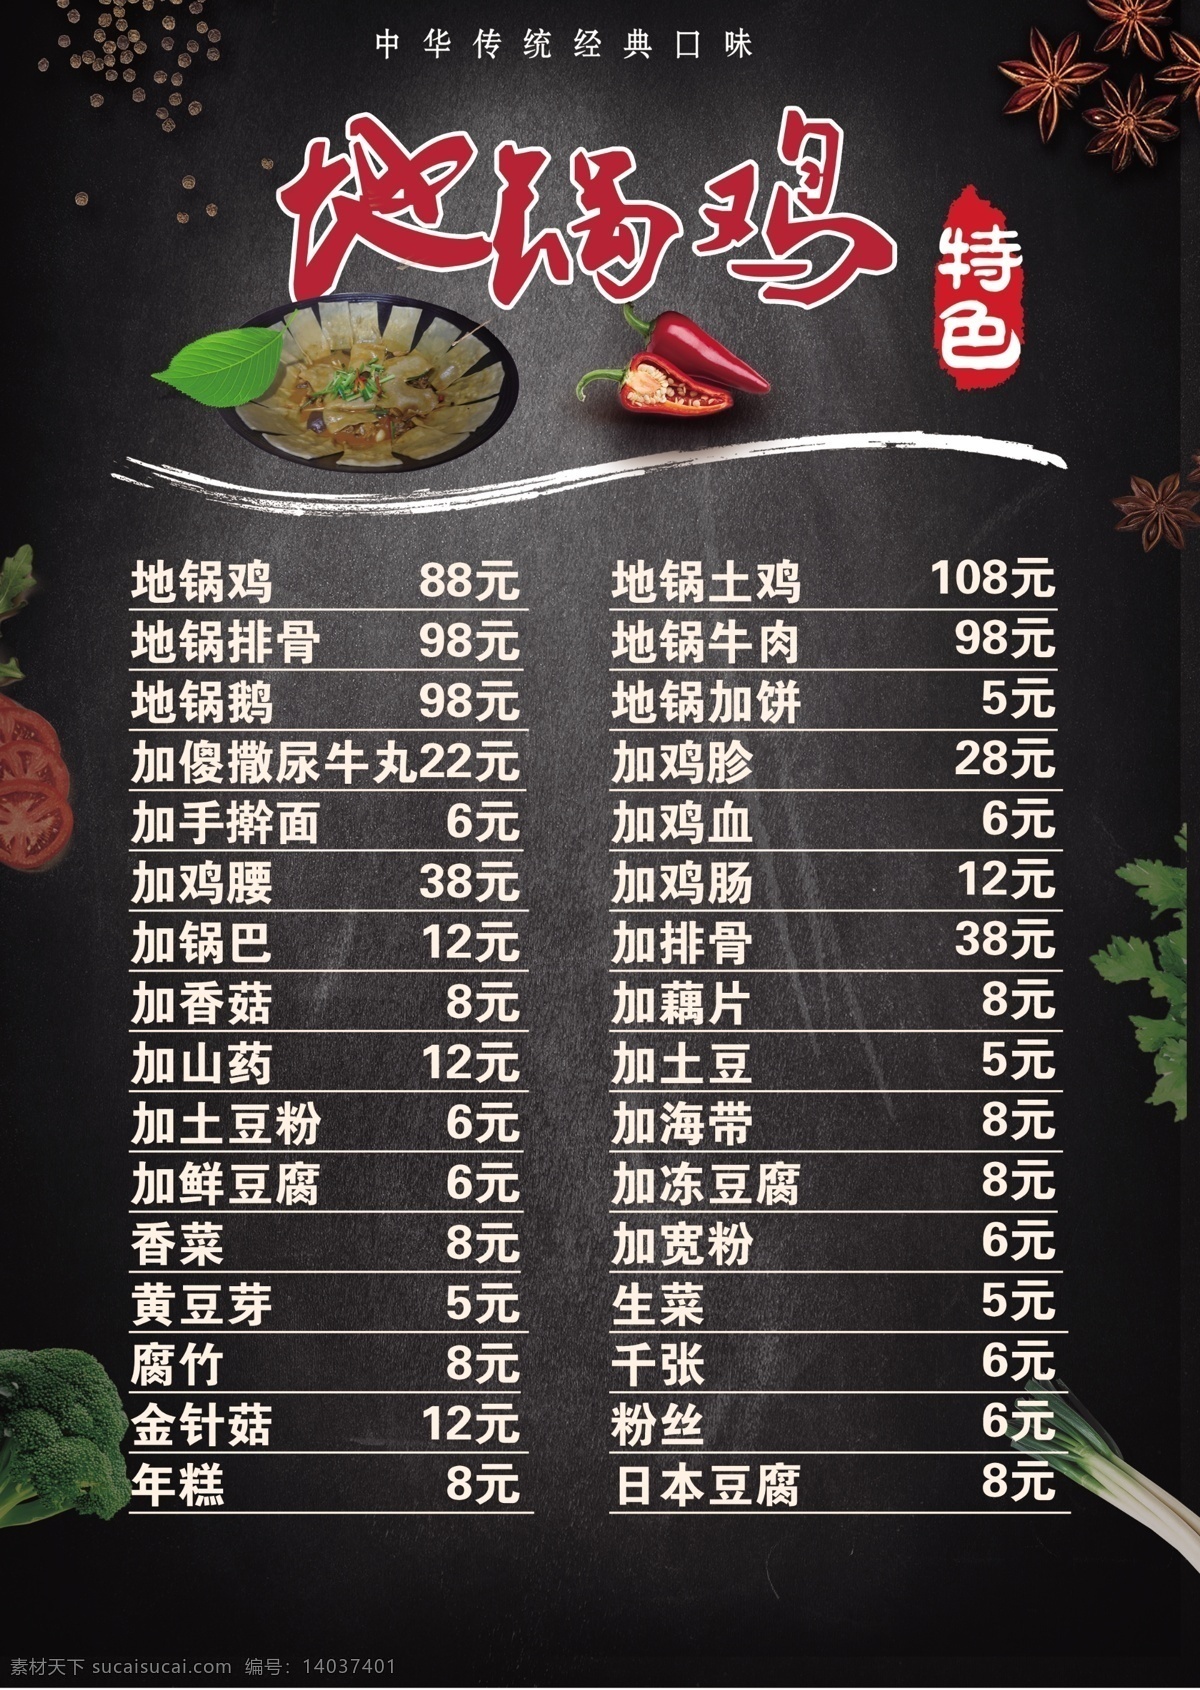 地锅鸡菜单 菜单 菜谱 菜牌 价格表 价目表 菜单菜谱